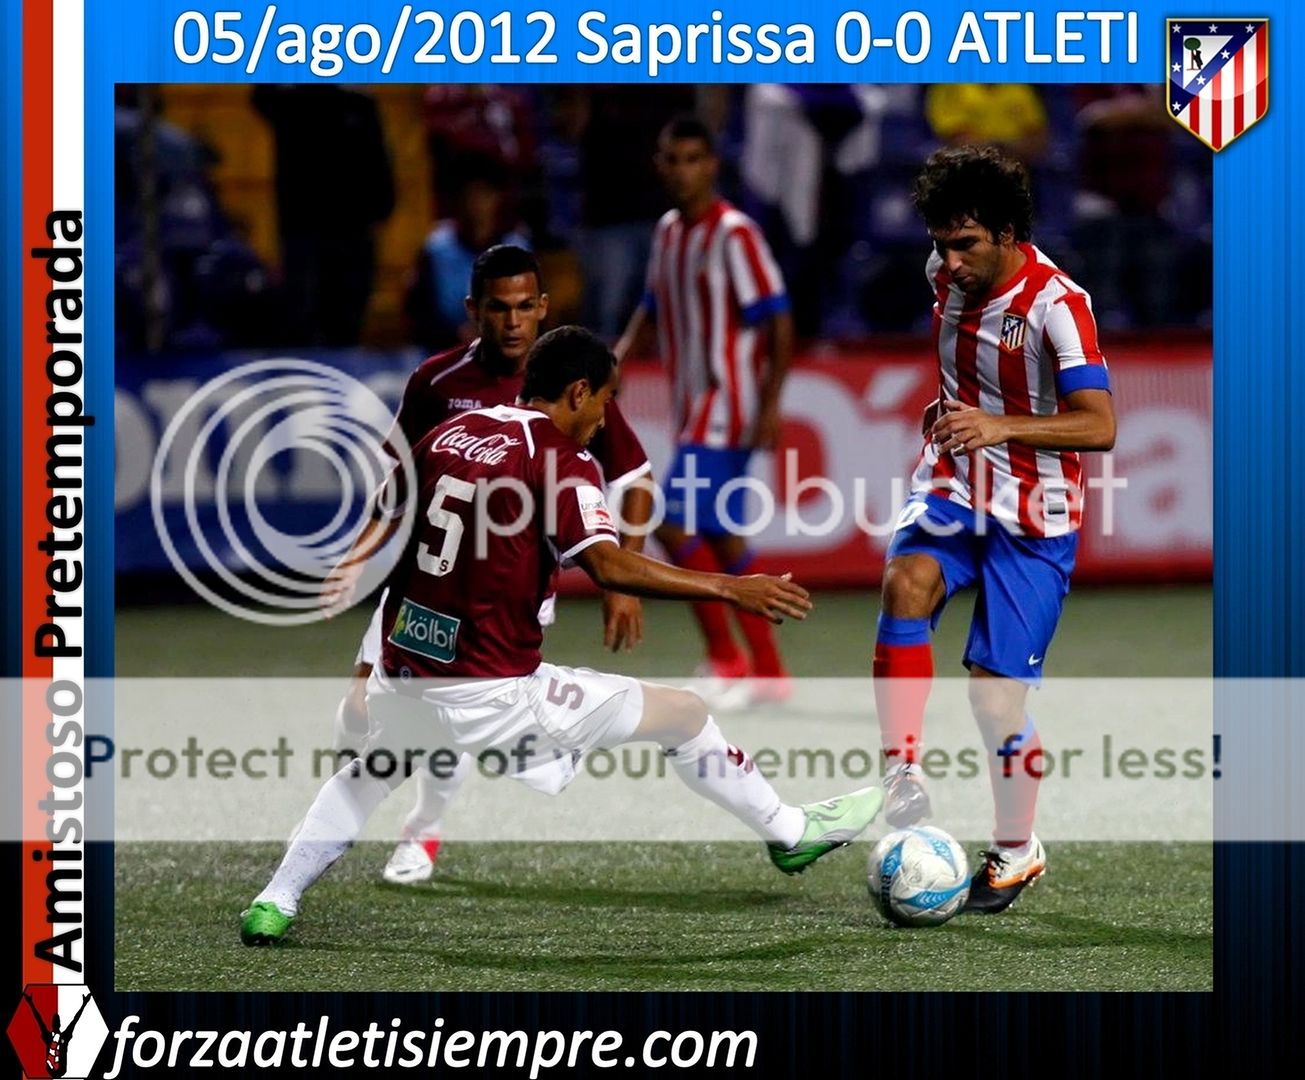 El Atlético de Madrid no pasa del empate ante un aguerrido Saprissa 008Copiar-7